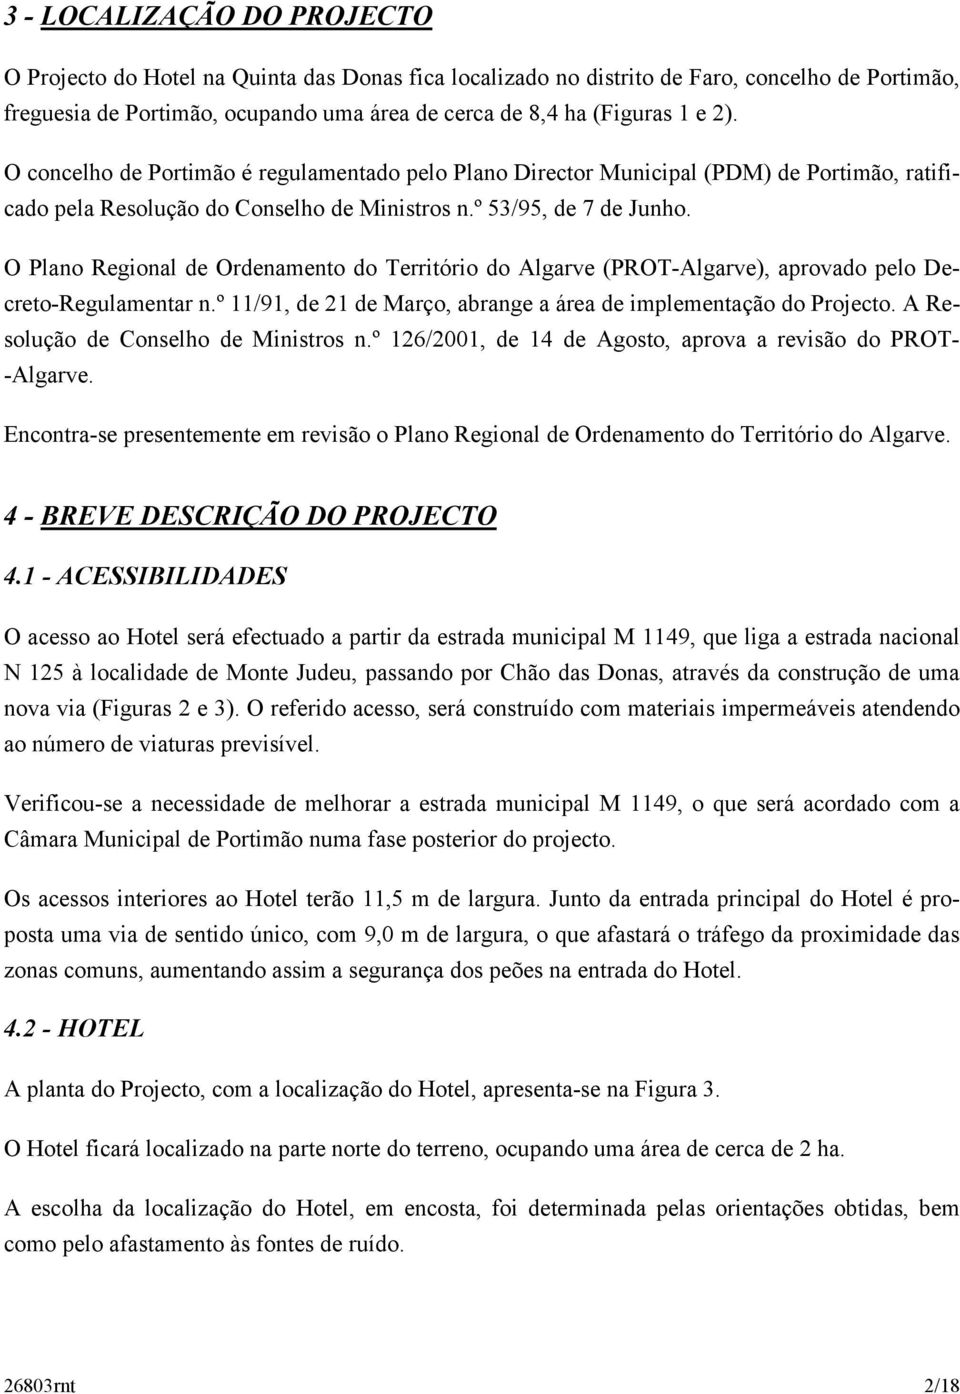 O Plano Regional de Ordenamento do Território do Algarve (PROT-Algarve), aprovado pelo Decreto-Regulamentar n.º 11/91, de 21 de Março, abrange a área de implementação do Projecto.